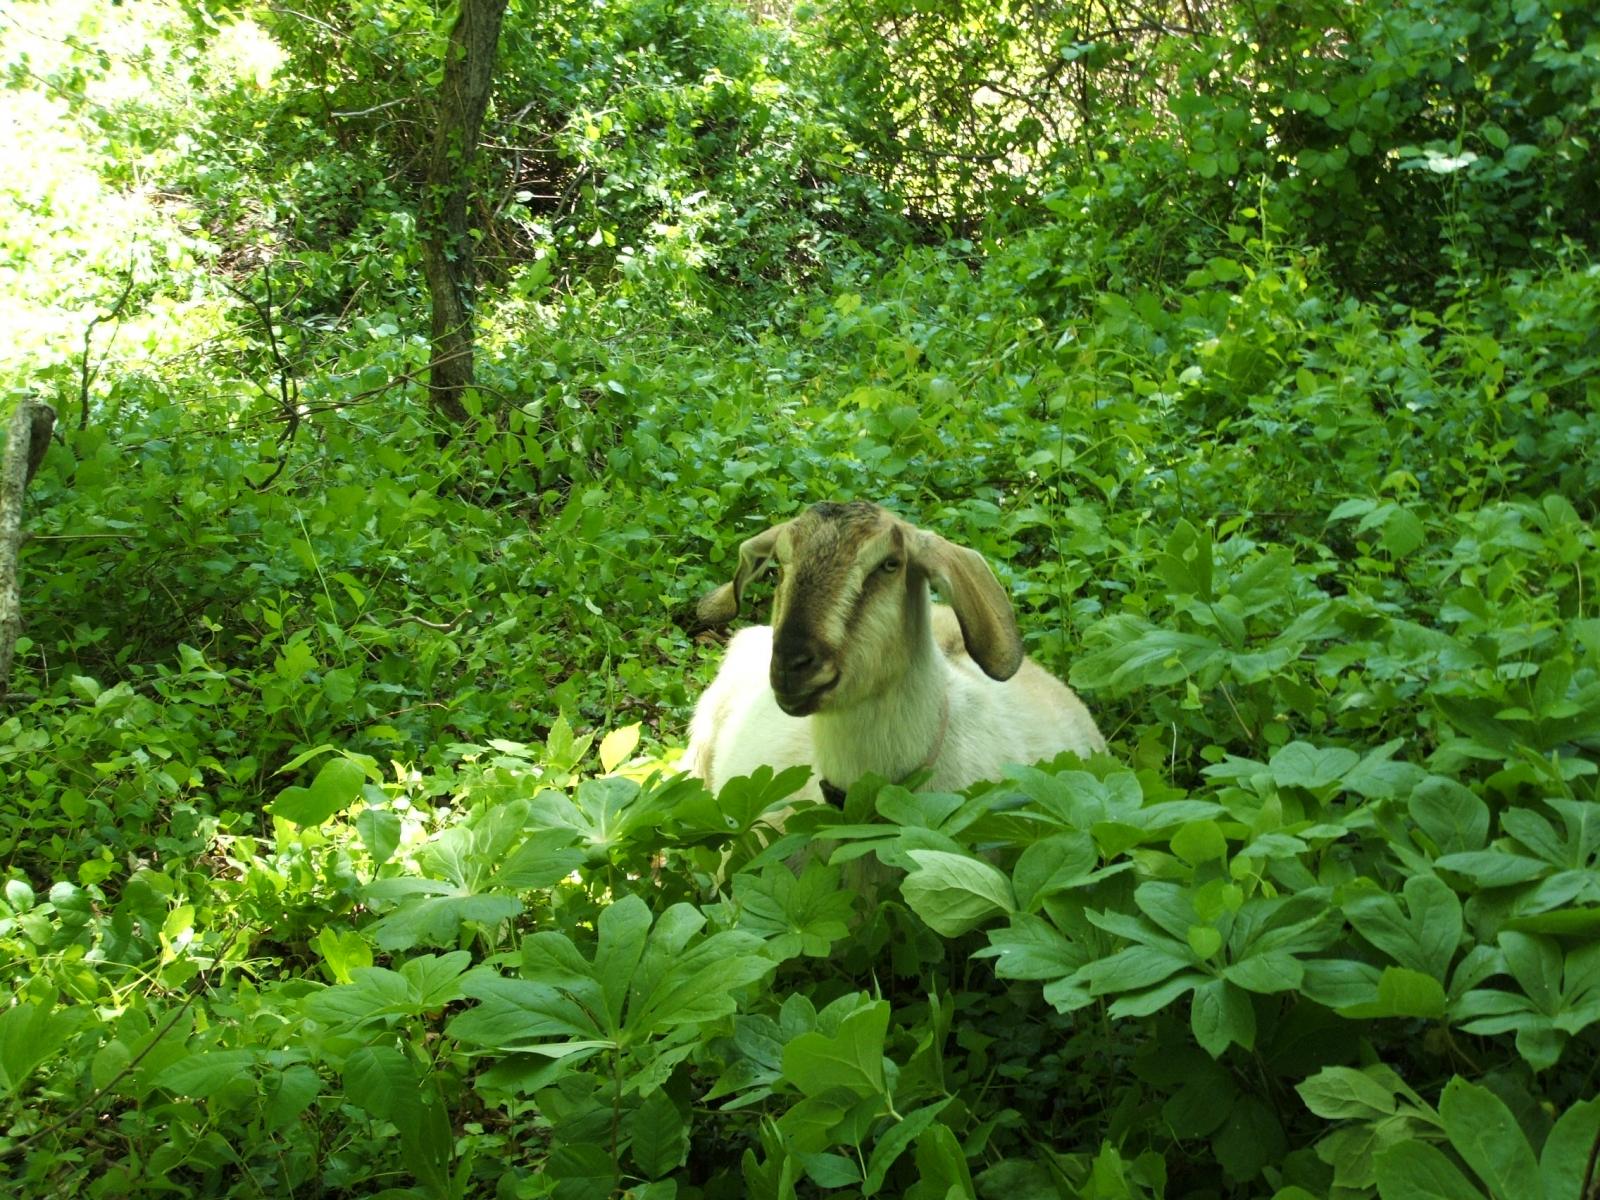 Goat in green field